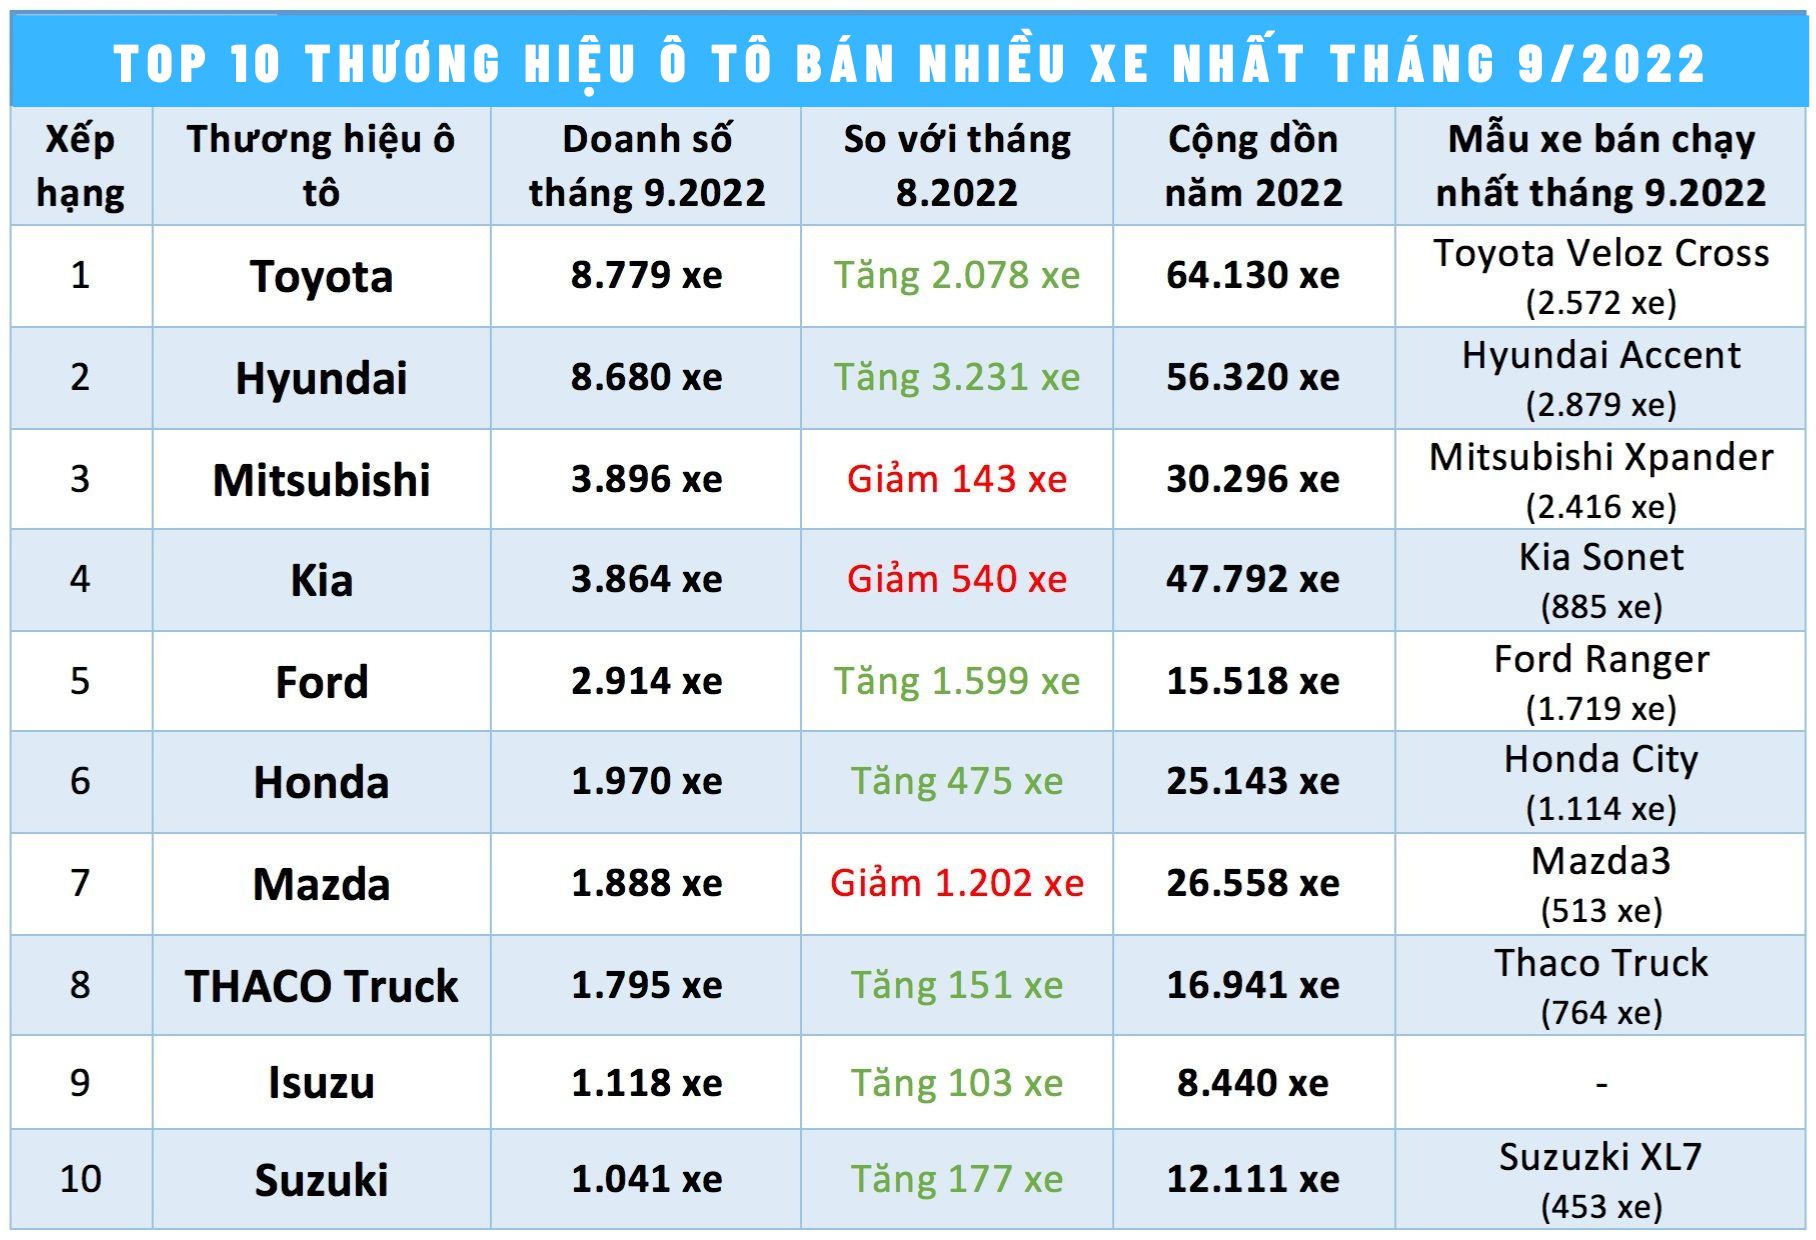 top 10 thương hiệu xe ô tô bán nhiều nhất tháng 9/2022